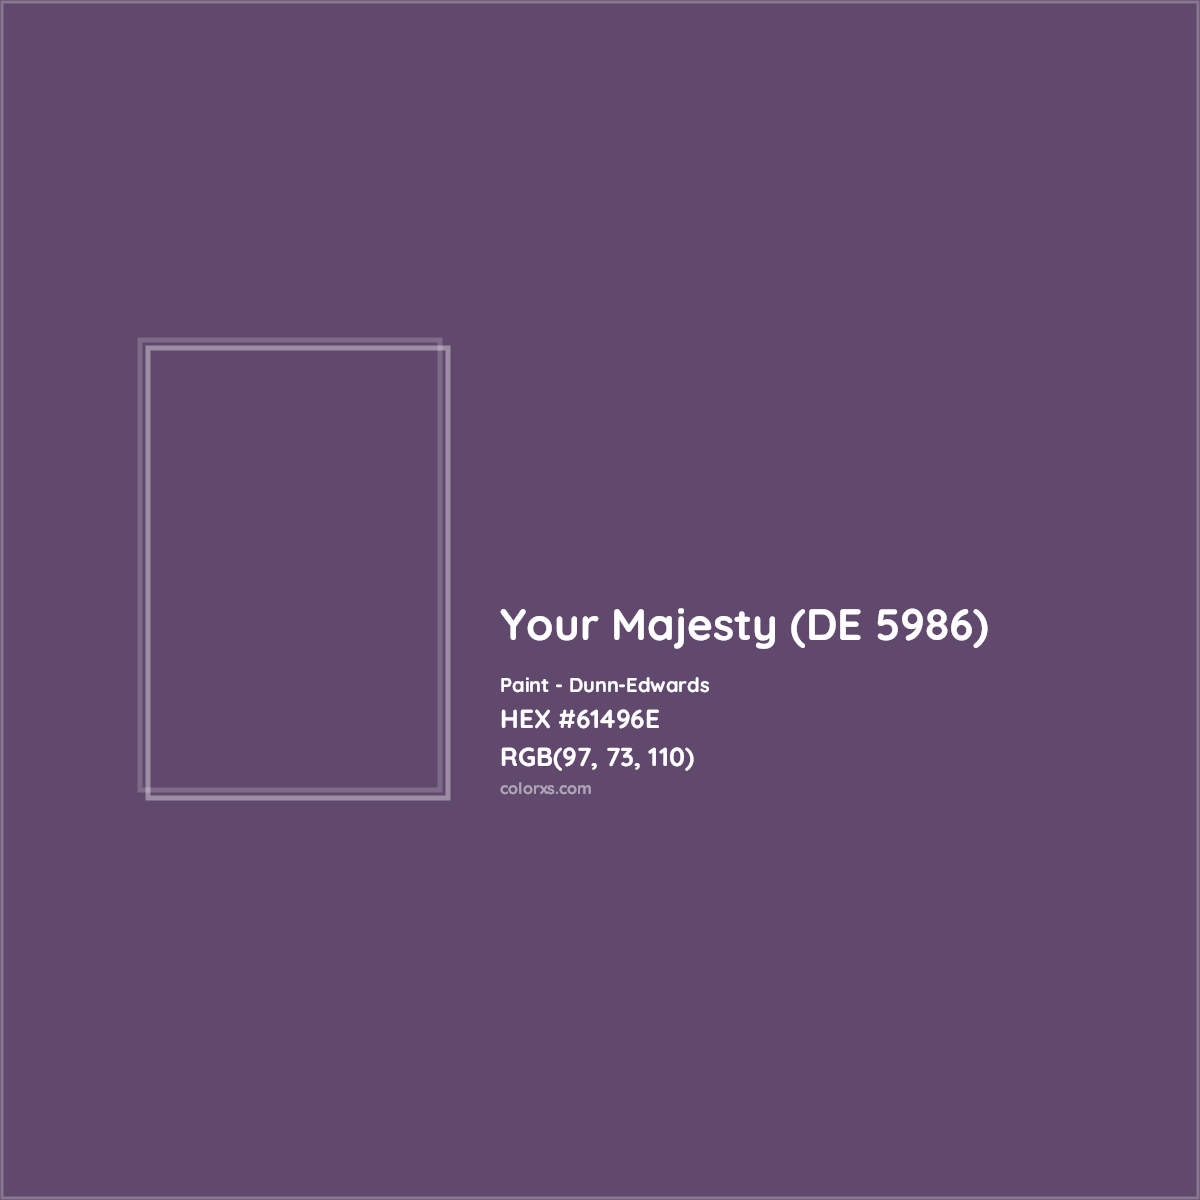 HEX #61496E Your Majesty (DE 5986) Paint Dunn-Edwards - Color Code